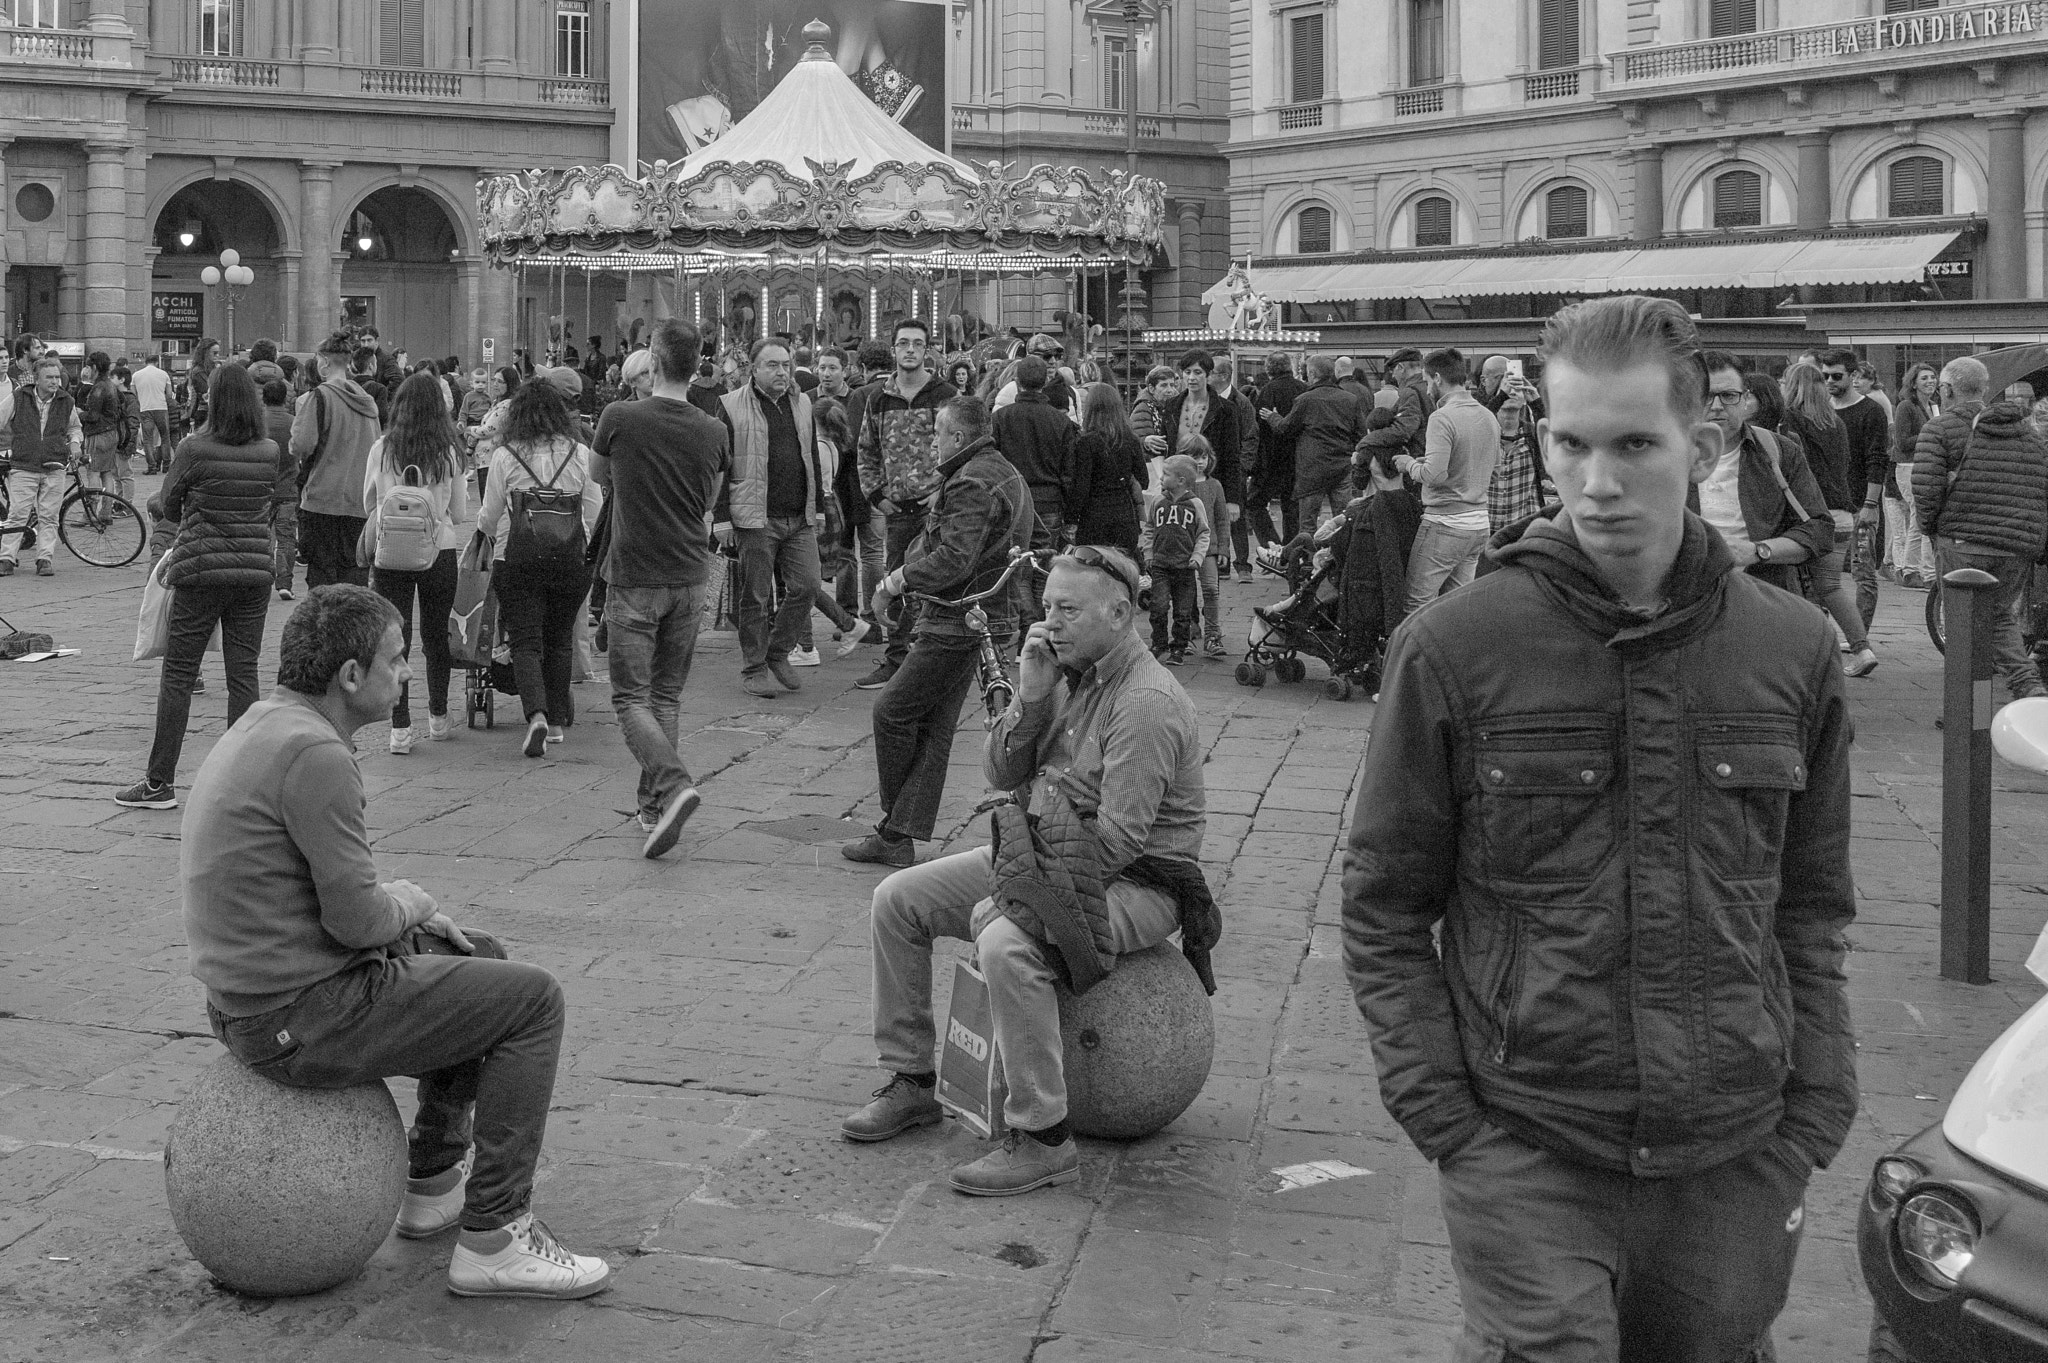 Elmarit-M 28mm f/2.8 (III) sample photo. Firenze, piazza della repubblica photography